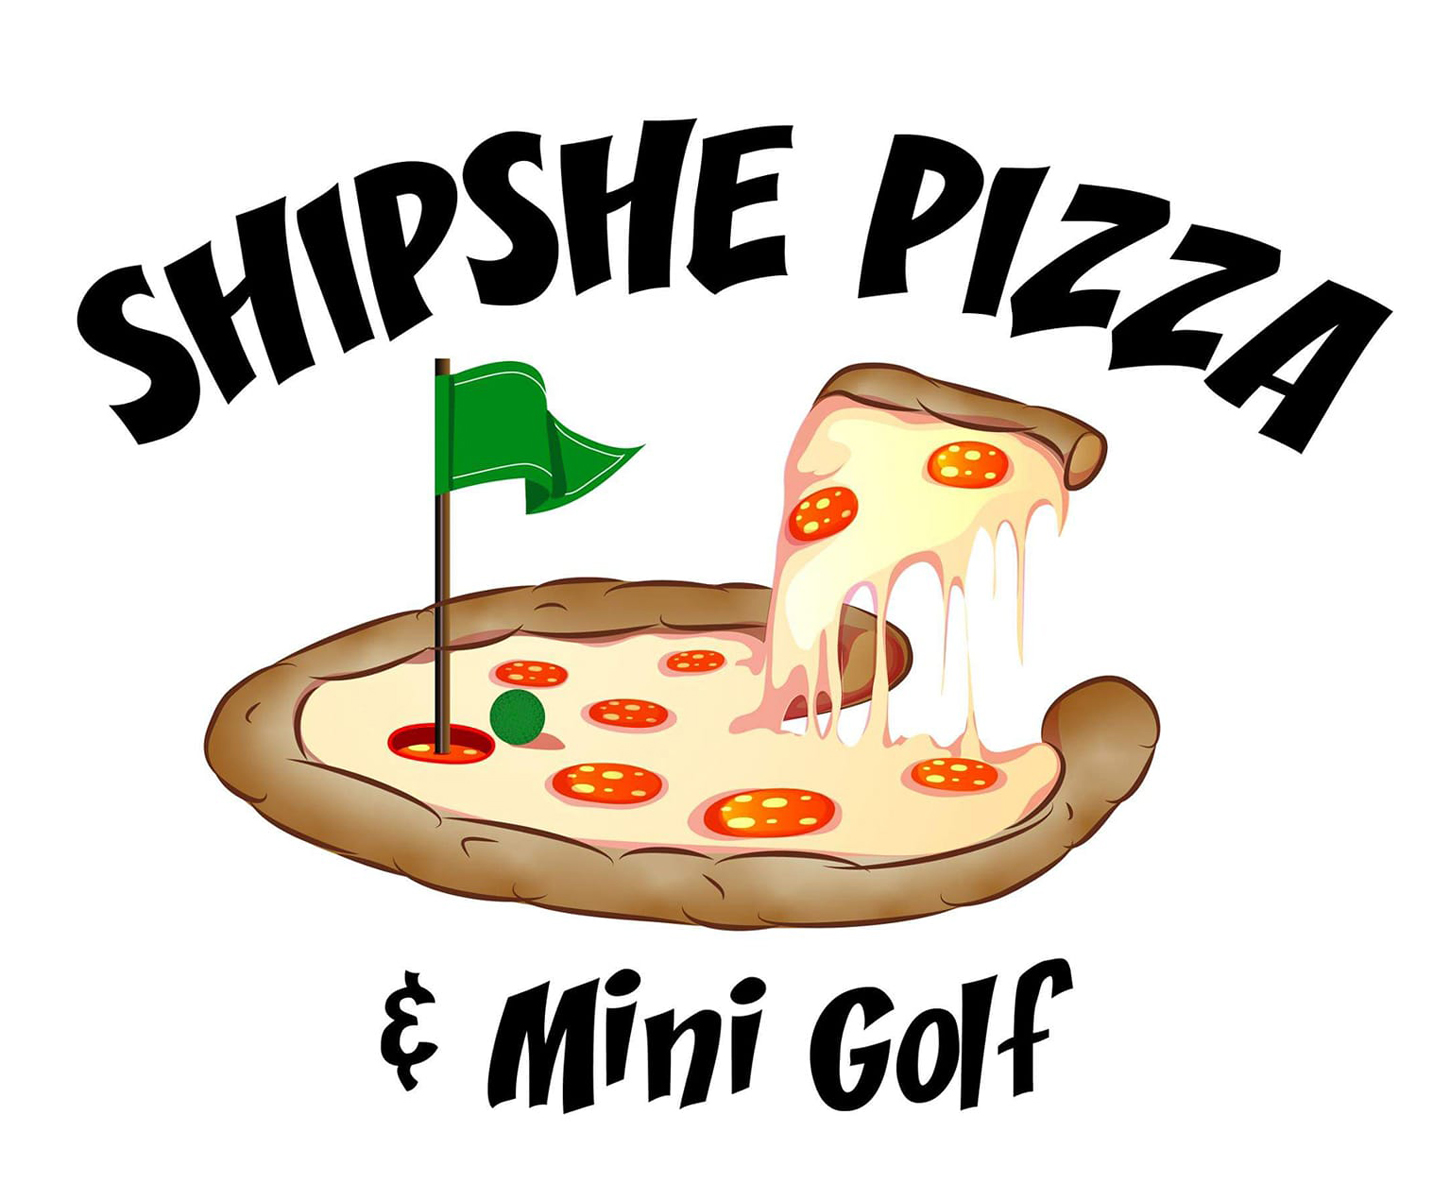 Shipshe Pizza & Mini-Golf, Inc